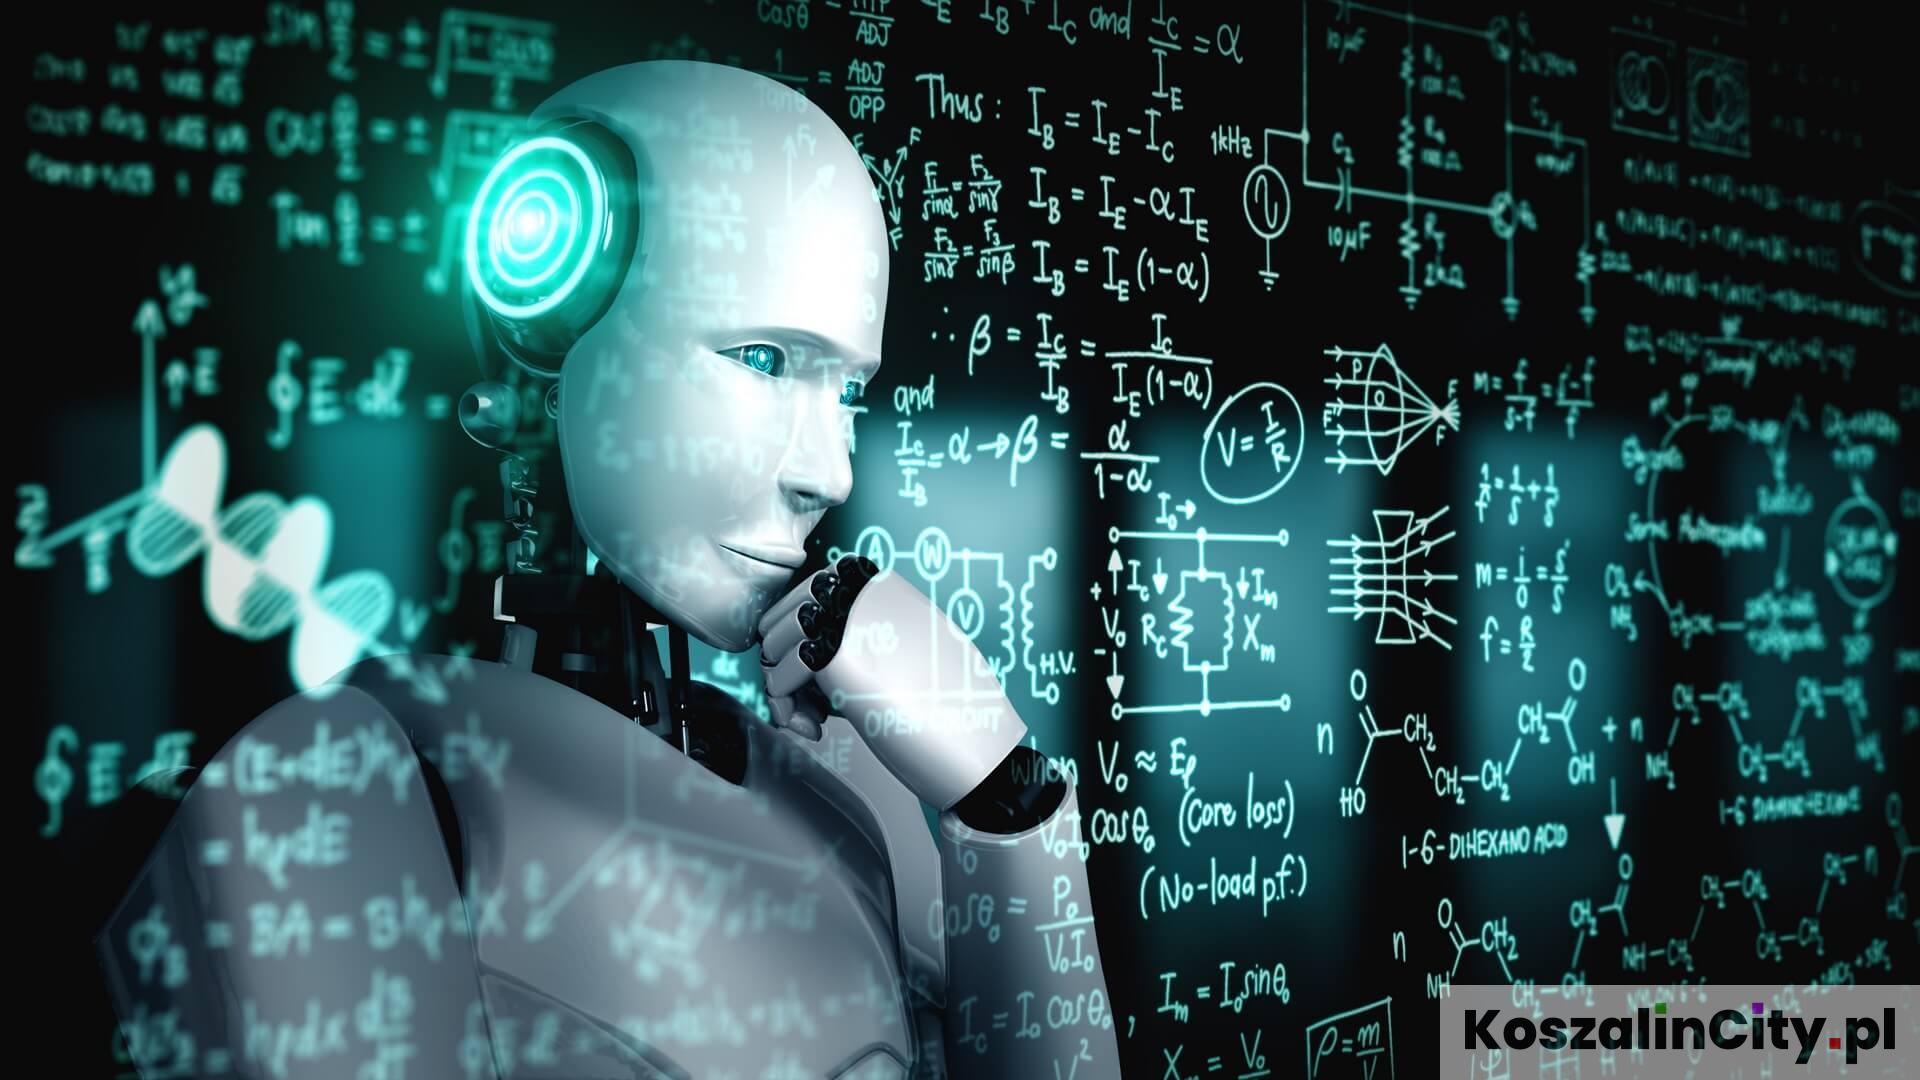 Sztuczna inteligencja, czyli AI (Artificial Intelligence)